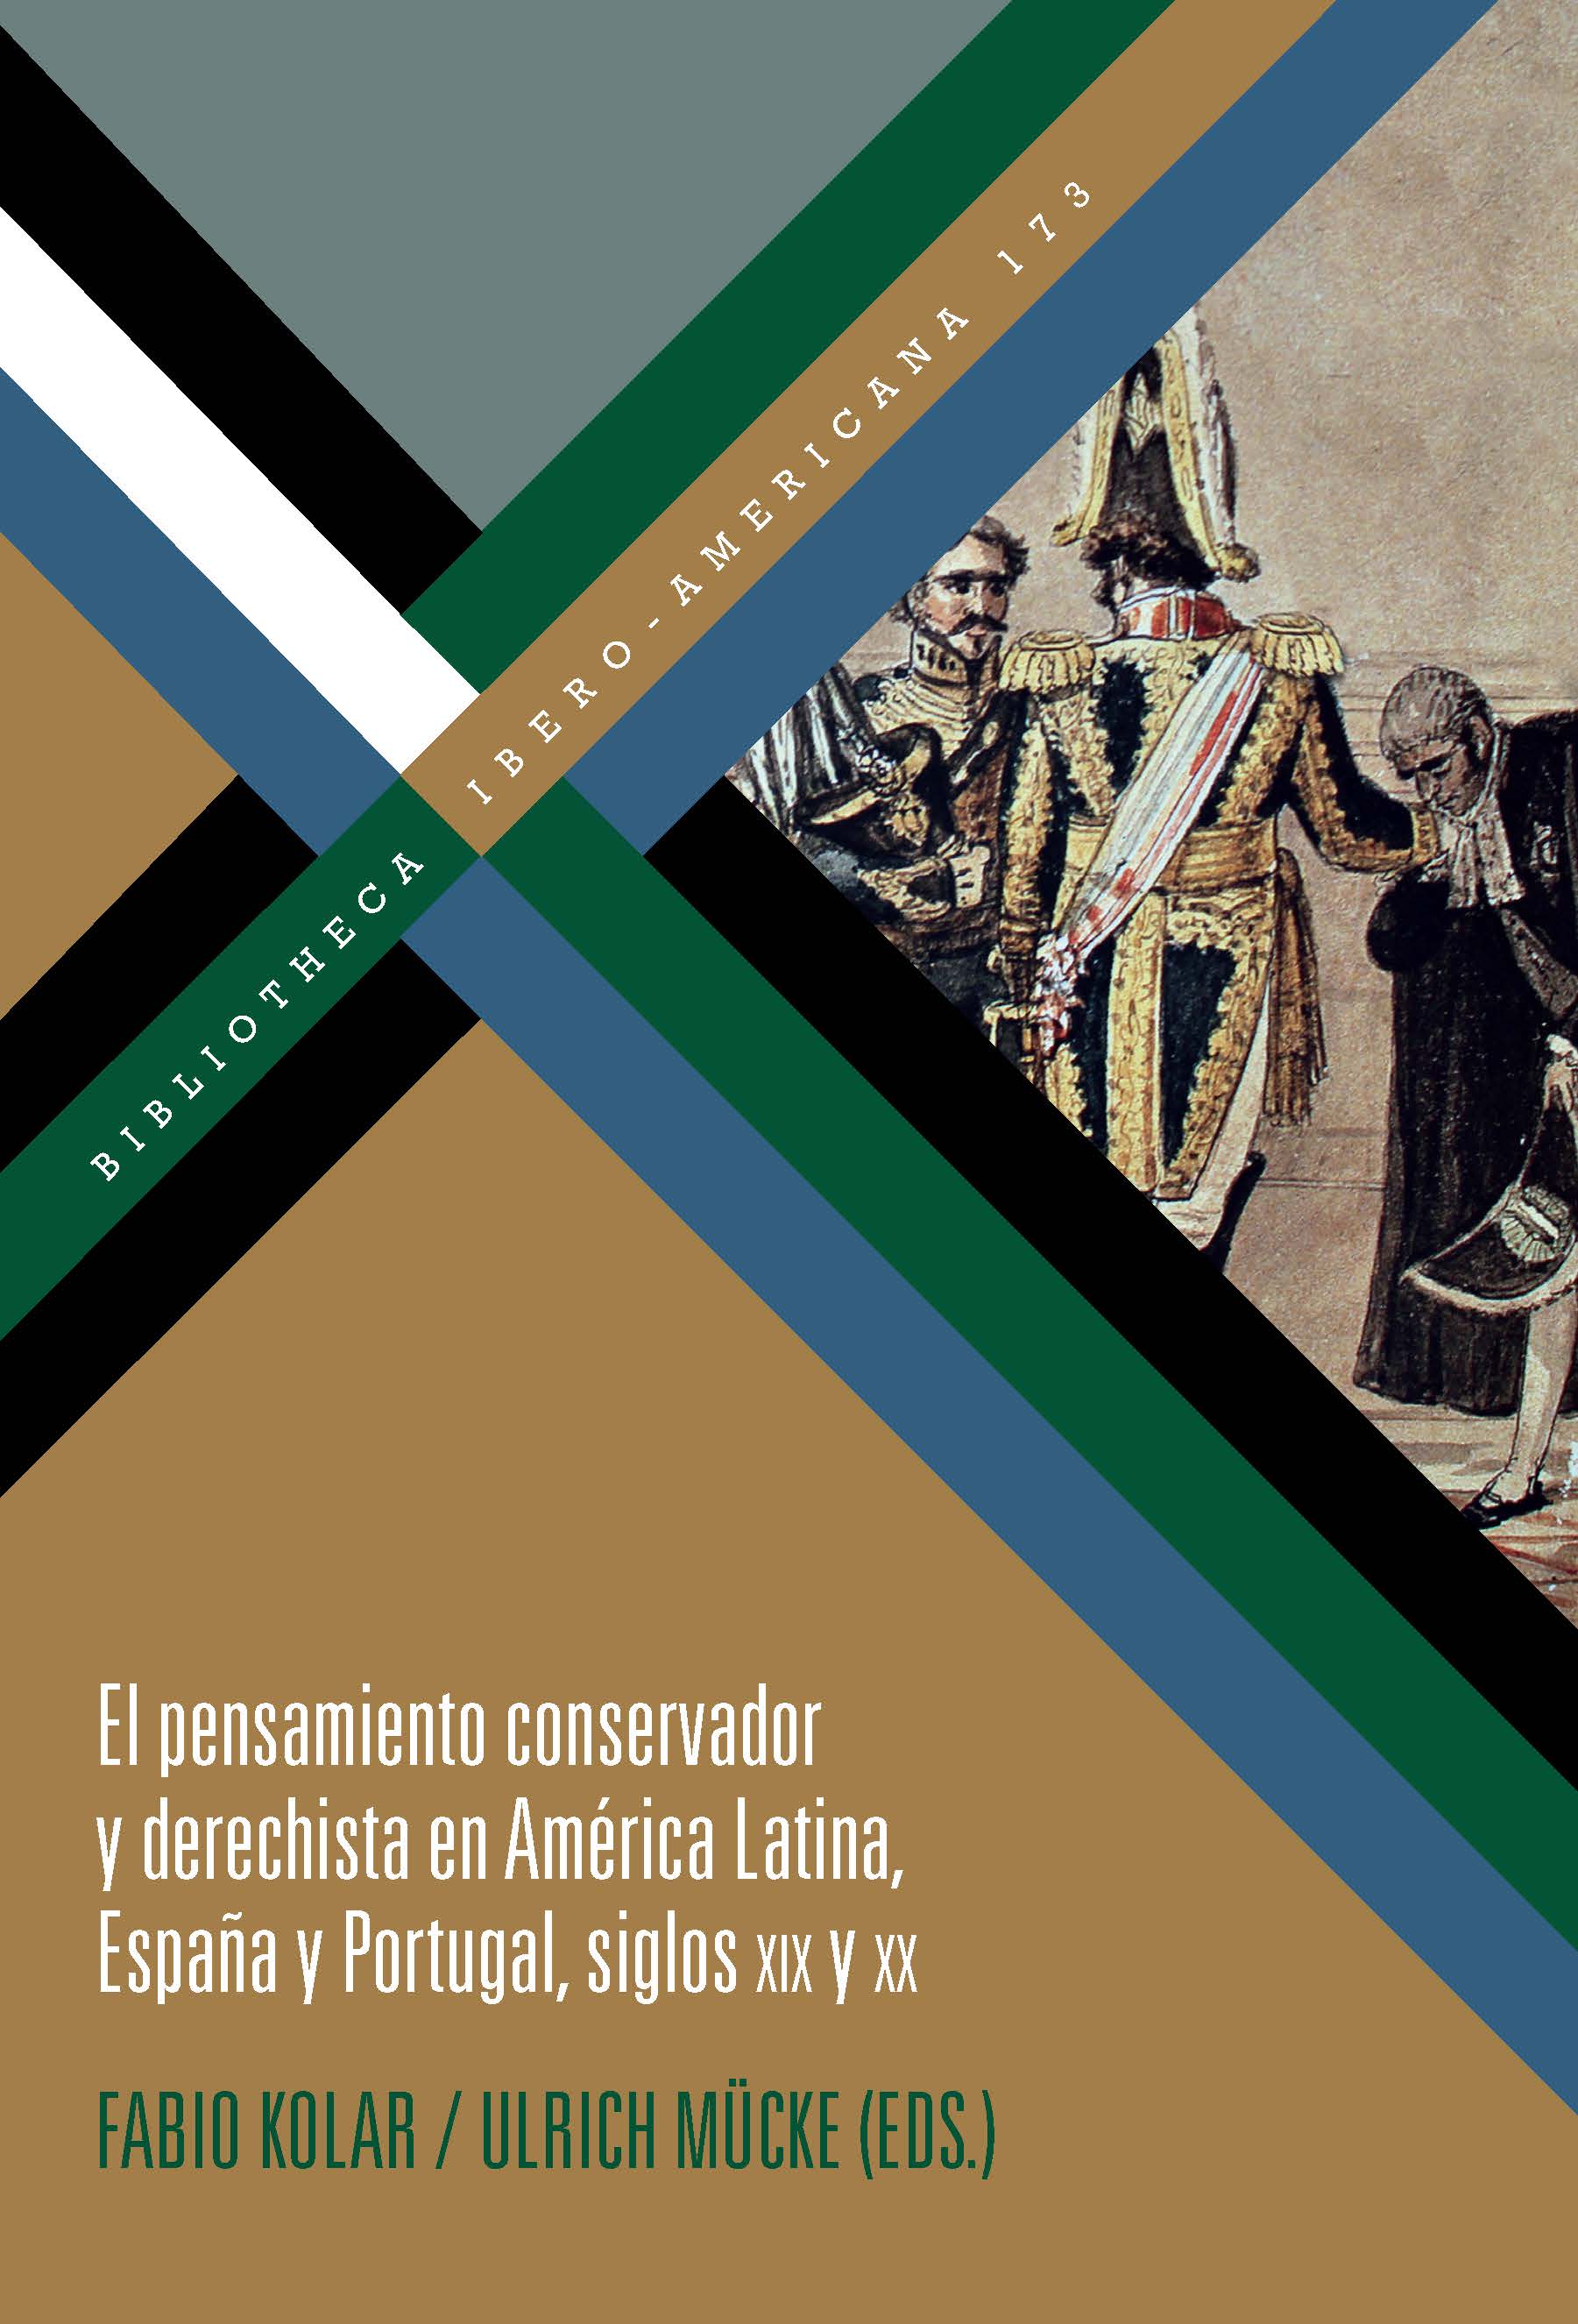 El pensamiento conservador y derechista en América Latina, España y Portugal